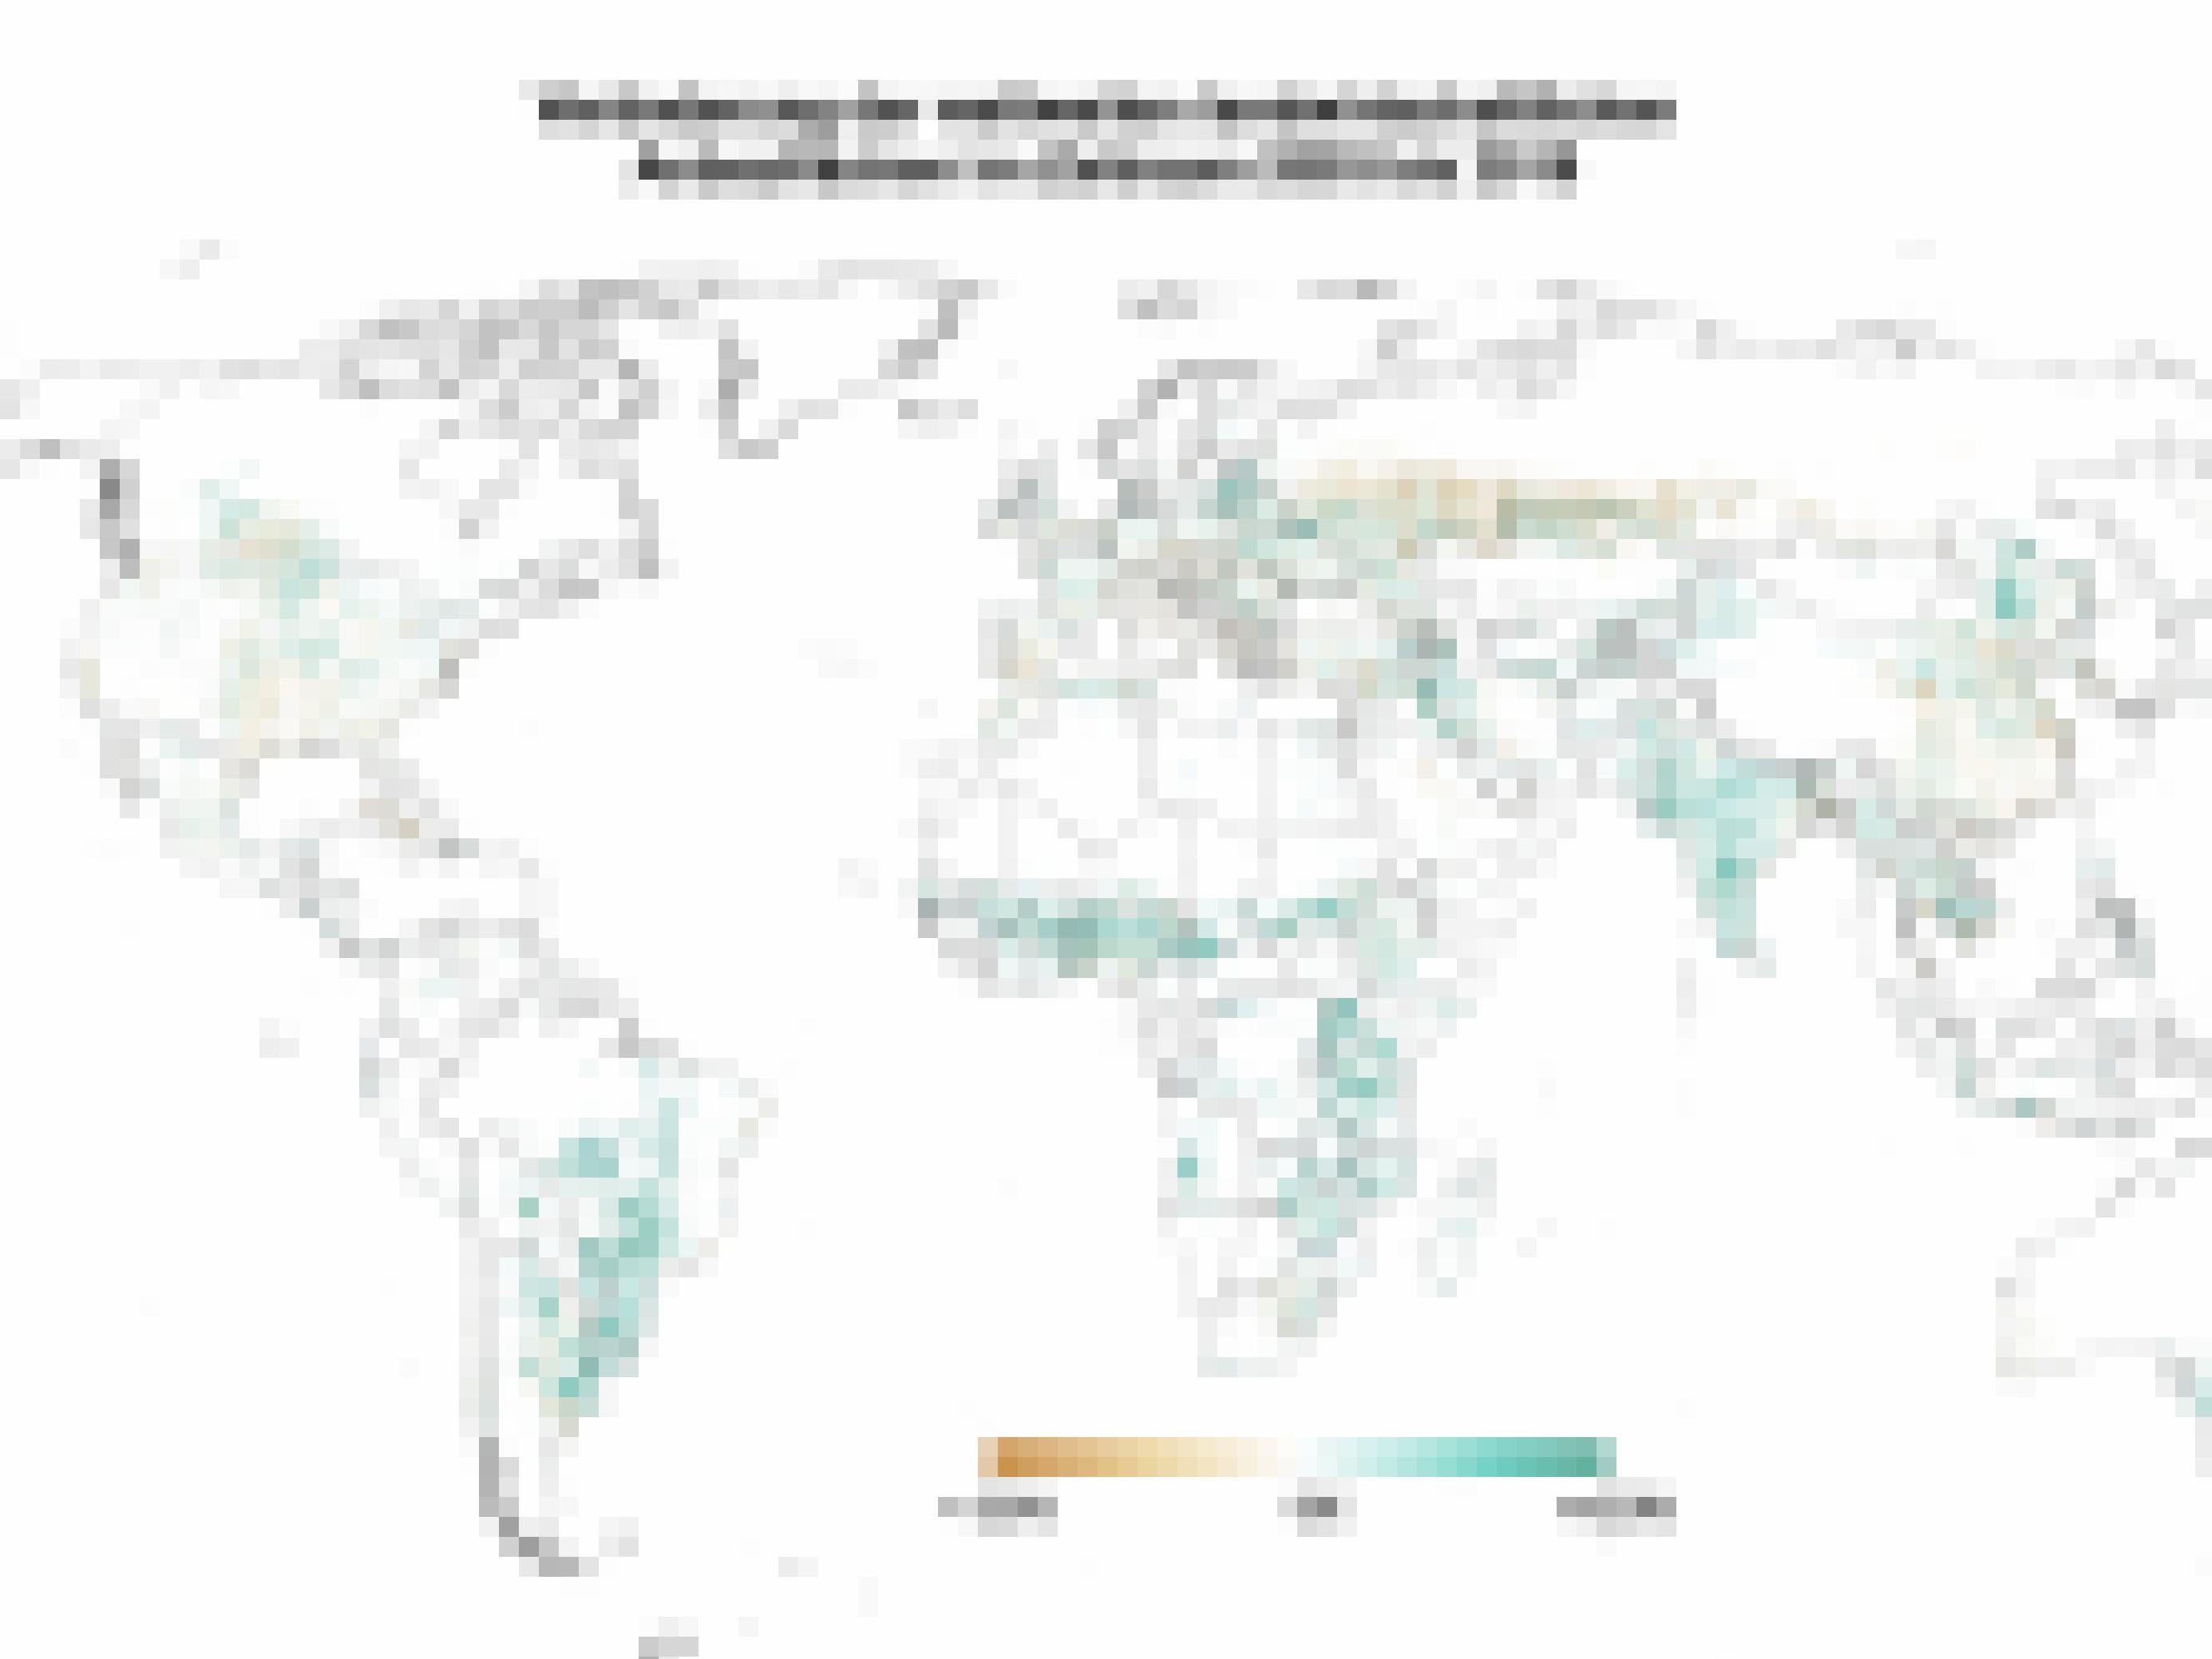 Weltkarte, die eine deutliche Zunahme von Anbauflächen vor allem in Südamerika und Afrika zeigt.